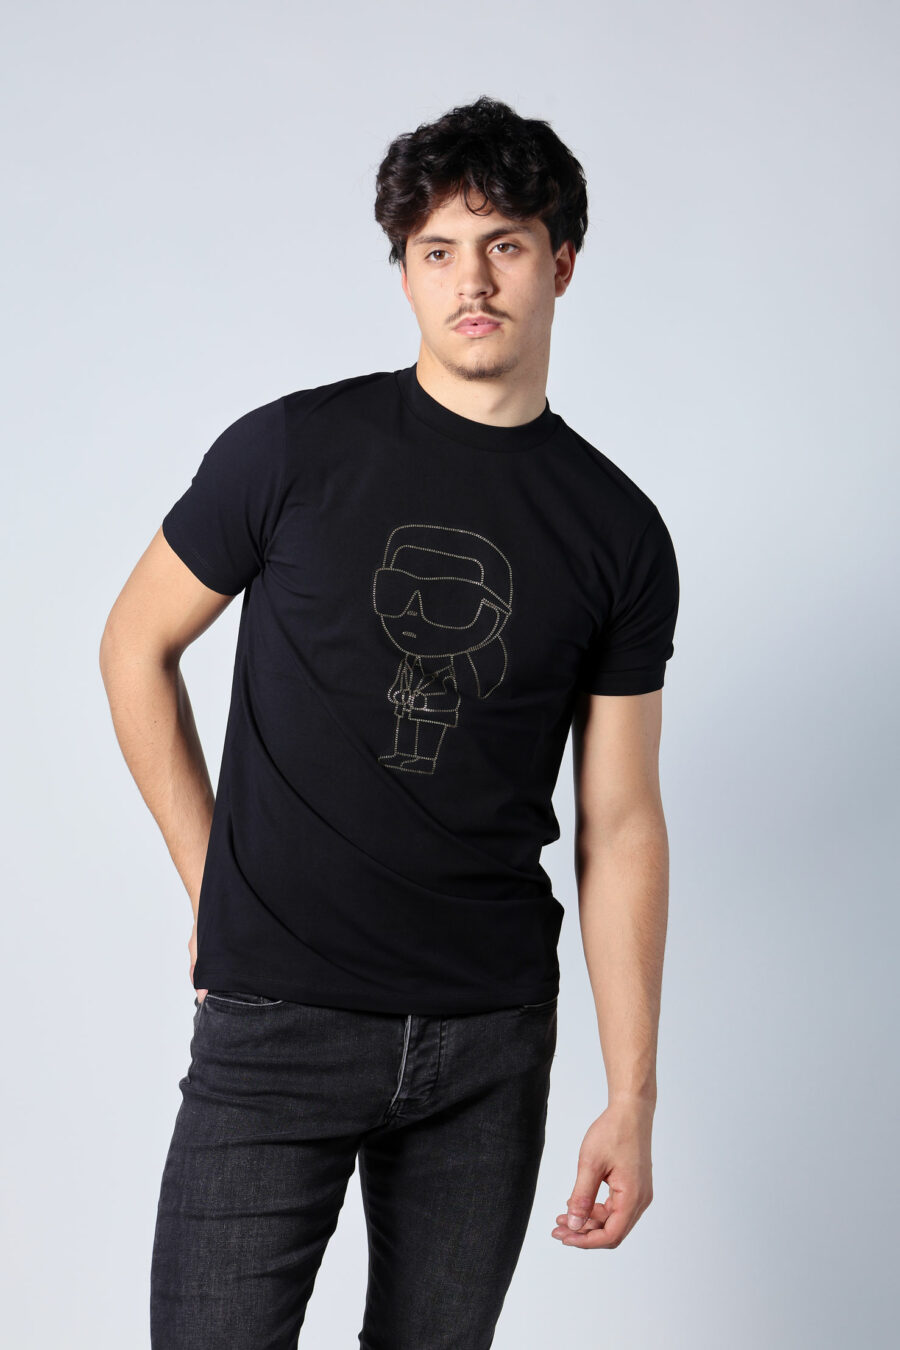 T-shirt preta com maxilogo "karl" dourado - Untitled Catalog 05708